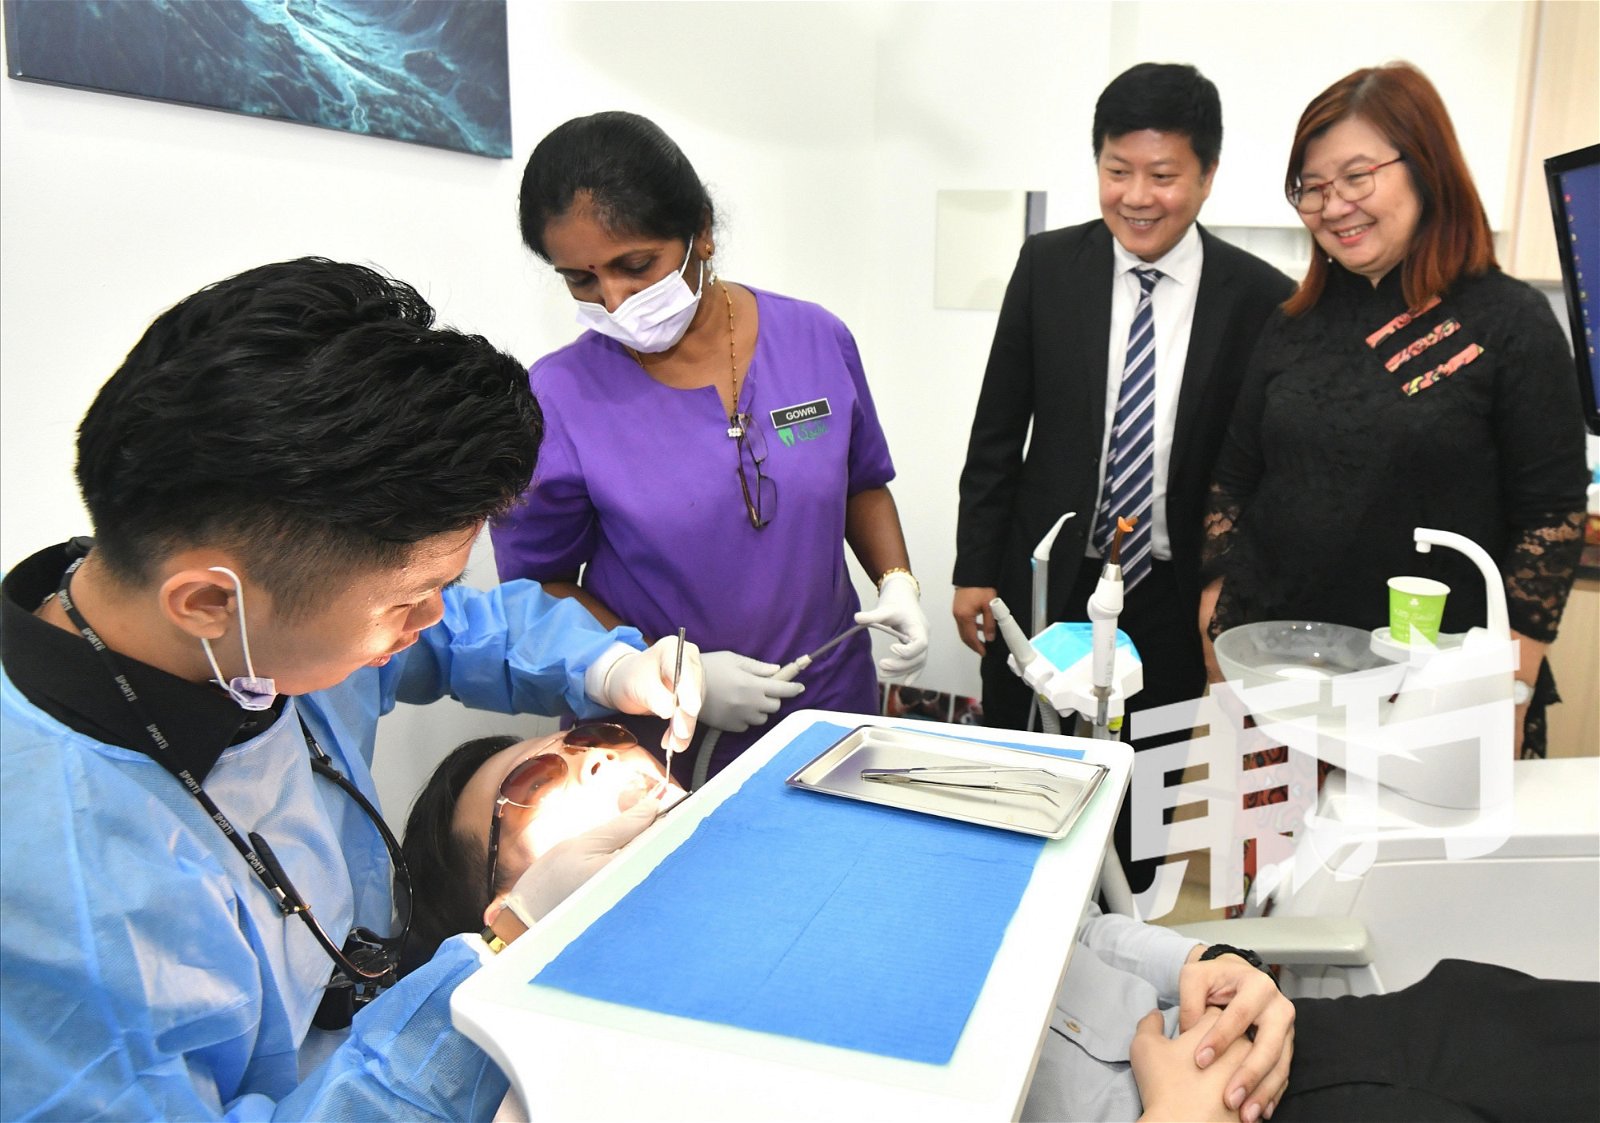 全民牙科集团在新加坡设立牙医学学院，这是一所提供在职牙医职业训练的学校，旨在全面提升牙医素质。“很多牙医毕业生，没有丰富的实战经验，当需要进行手术时，便会战战兢兢，甚至手抖。”